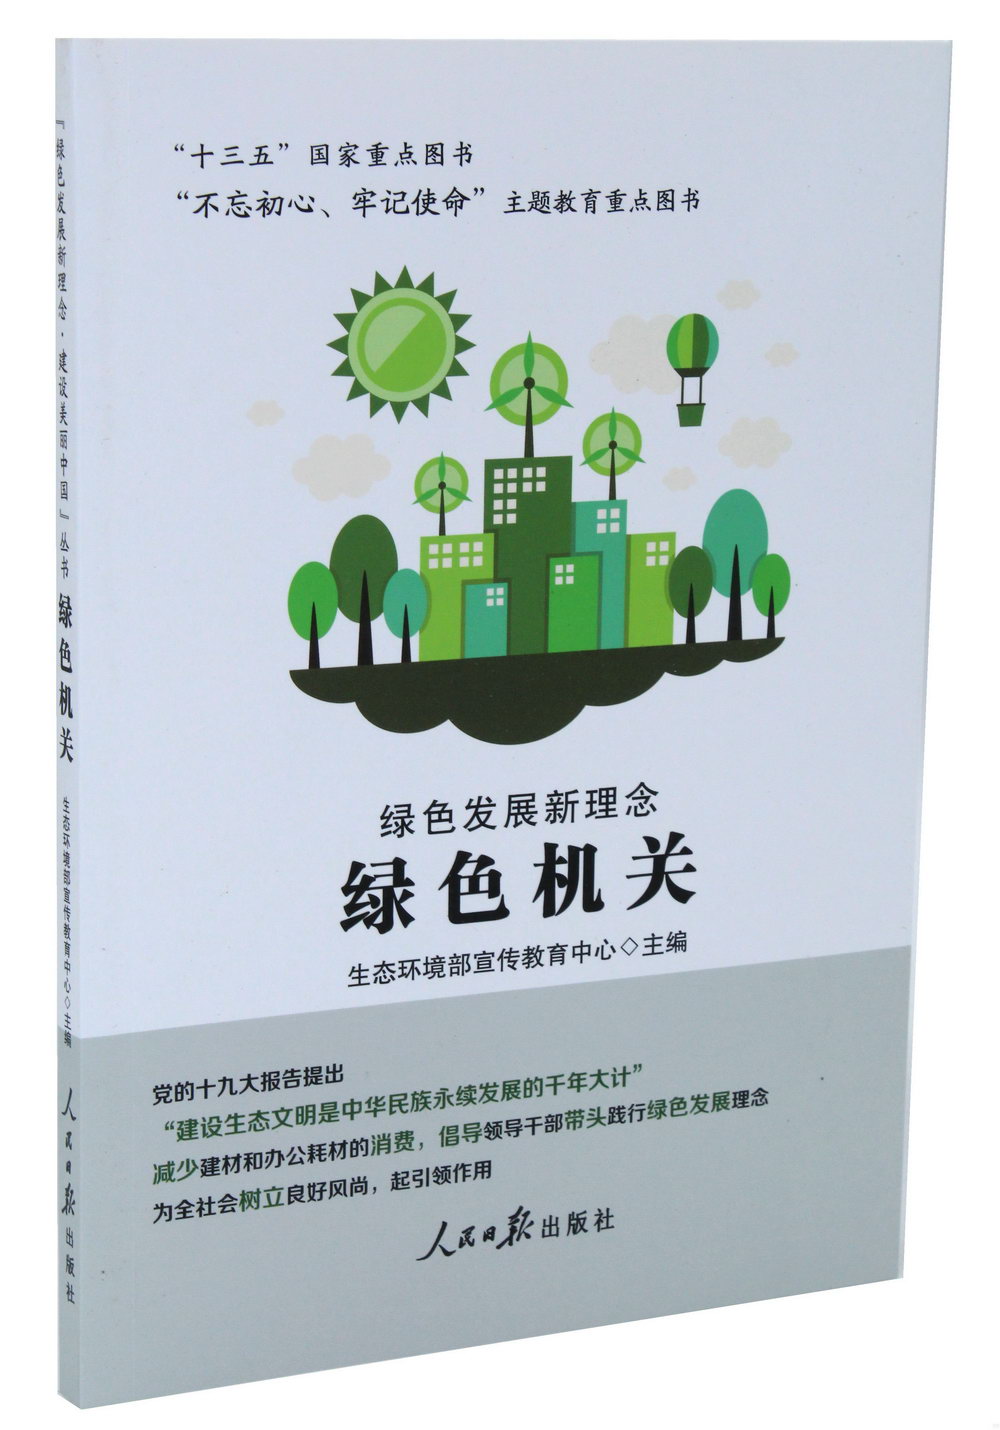 「綠色發展新理念·建設美麗中國」叢書：綠色機關